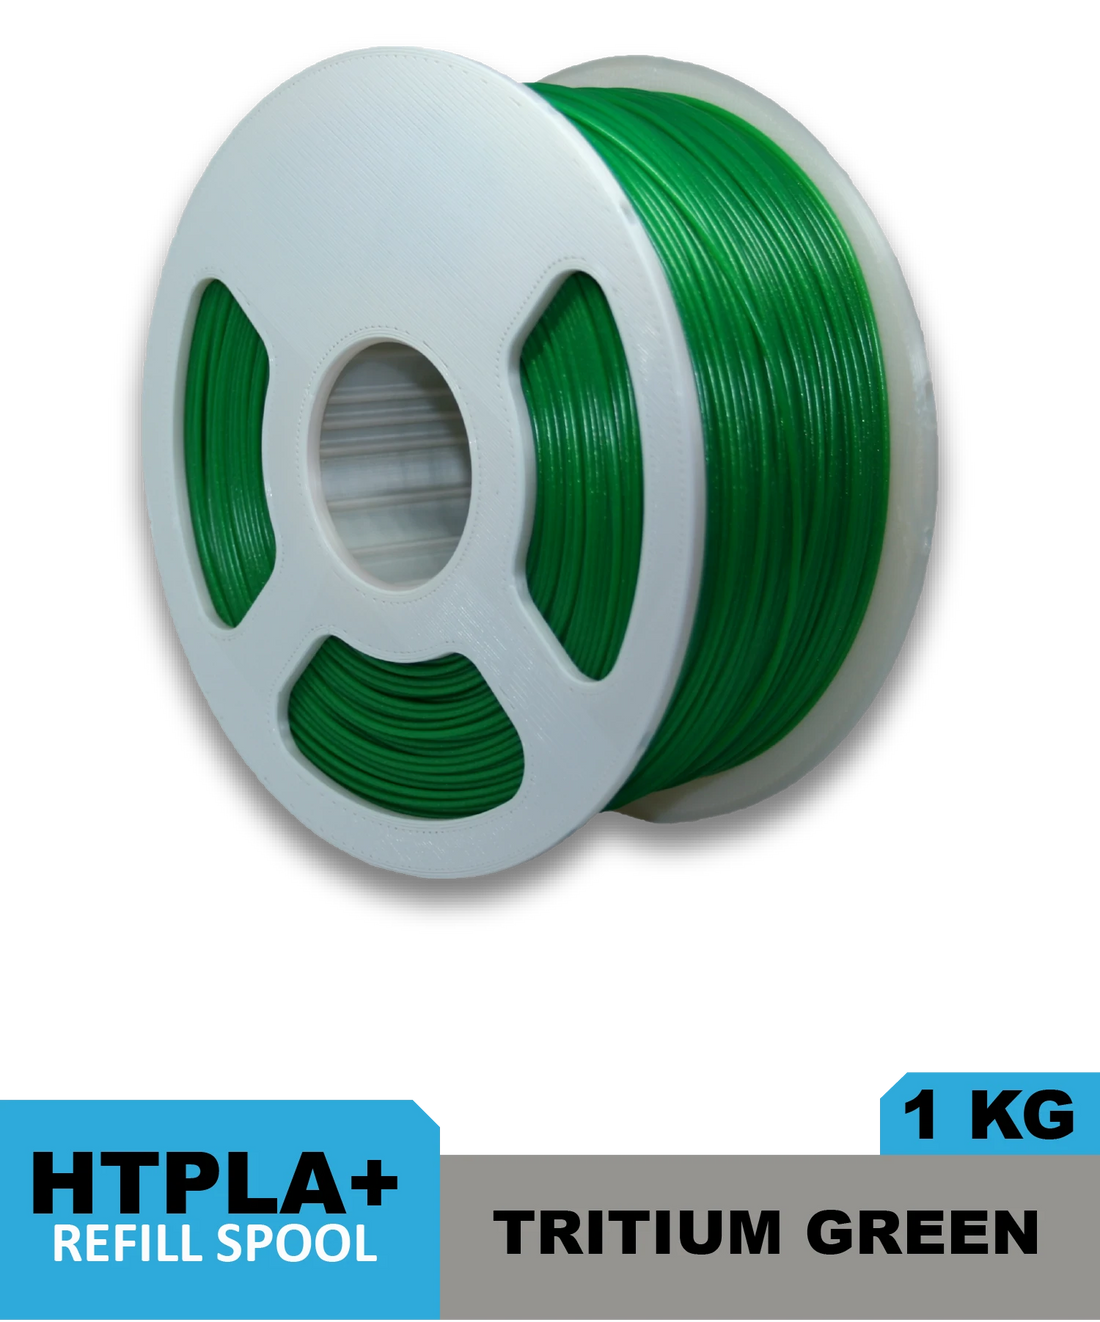 HTPLA - Tritium Green